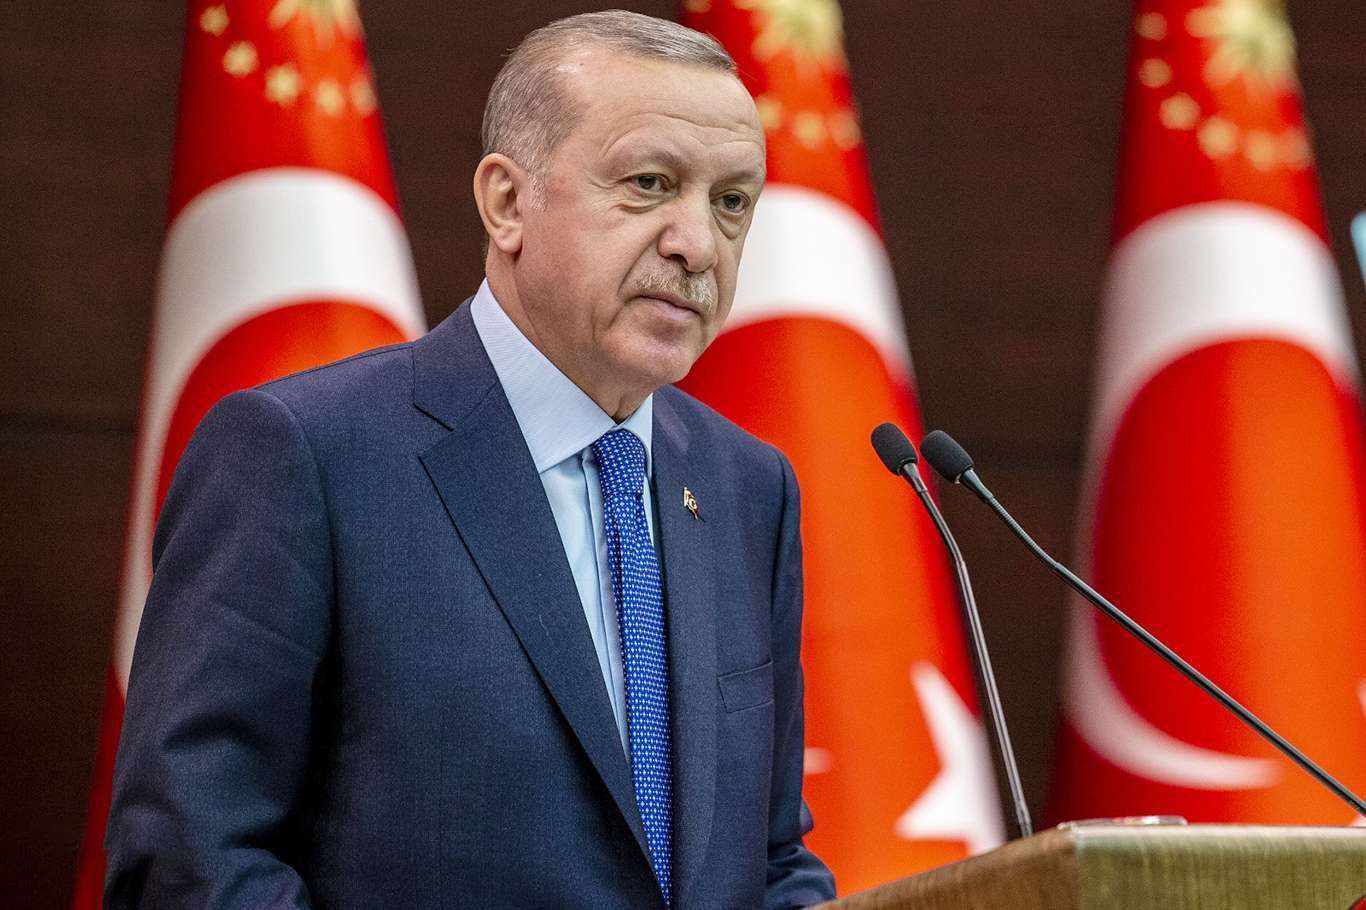 Cumhurbaşkanı Erdoğan: "Erbakan Hocamızı rahmetle hürmetle yâd ediyorum"